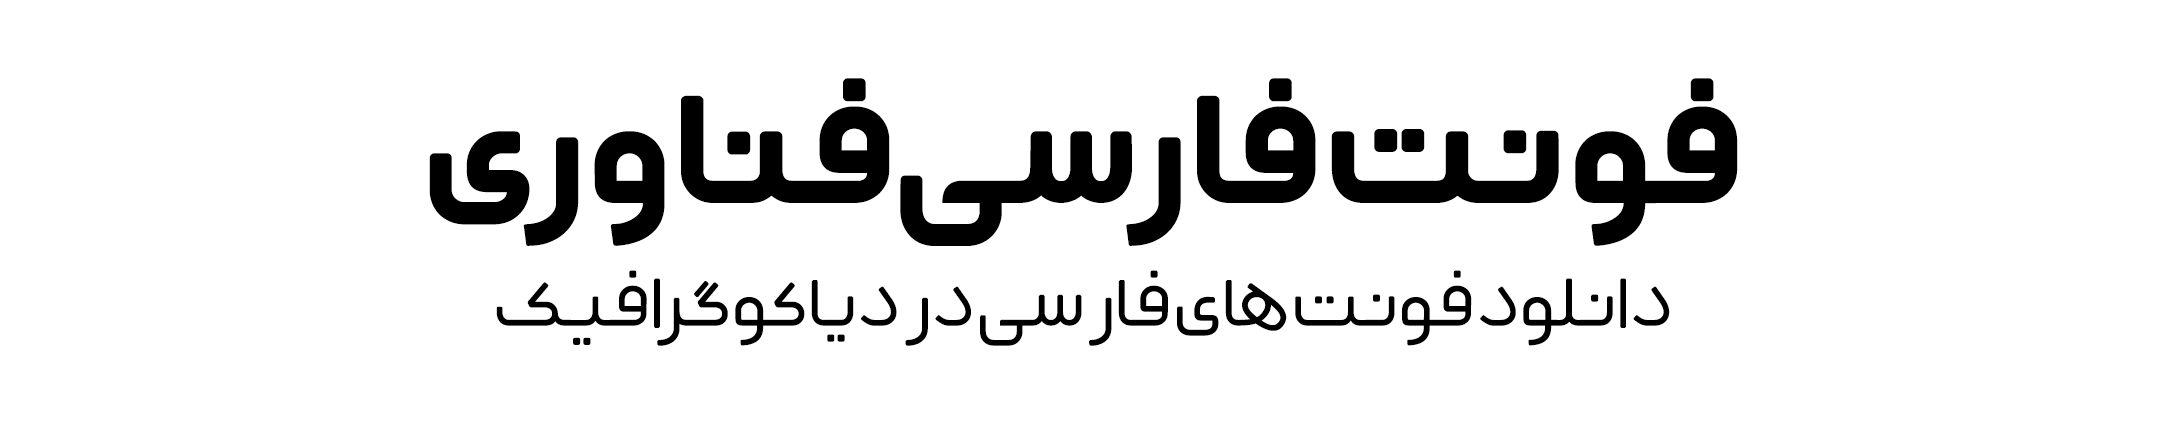 دانلود فونت فارسی فناوری